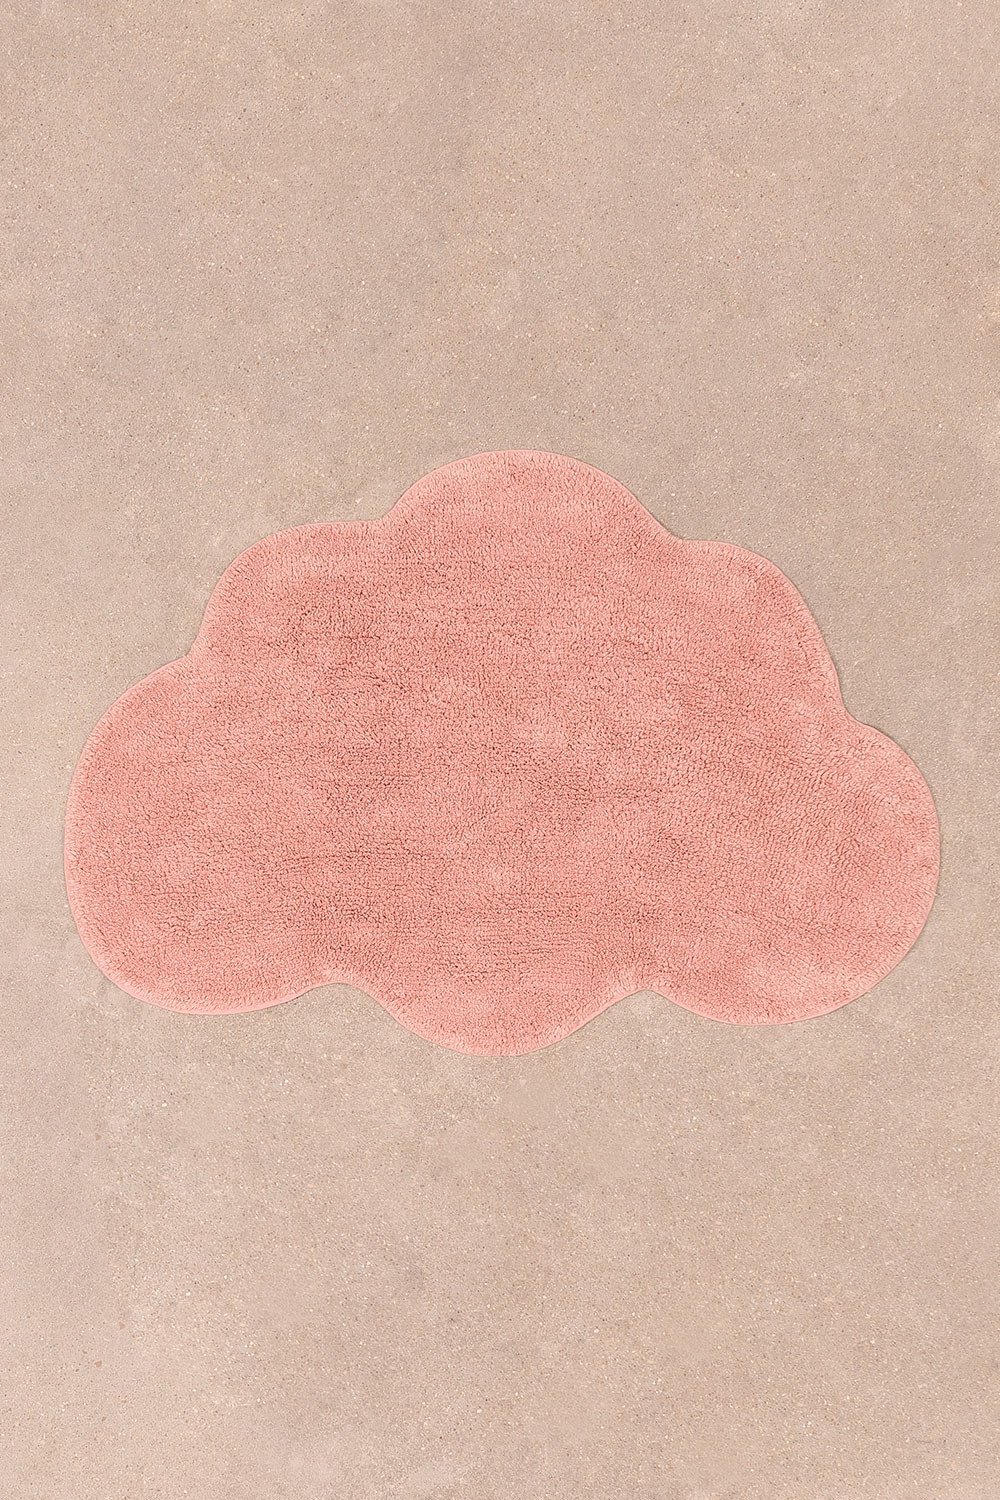 Tapete de algodão (69x100 cm) Cloud Kids, imagem de galeria 1